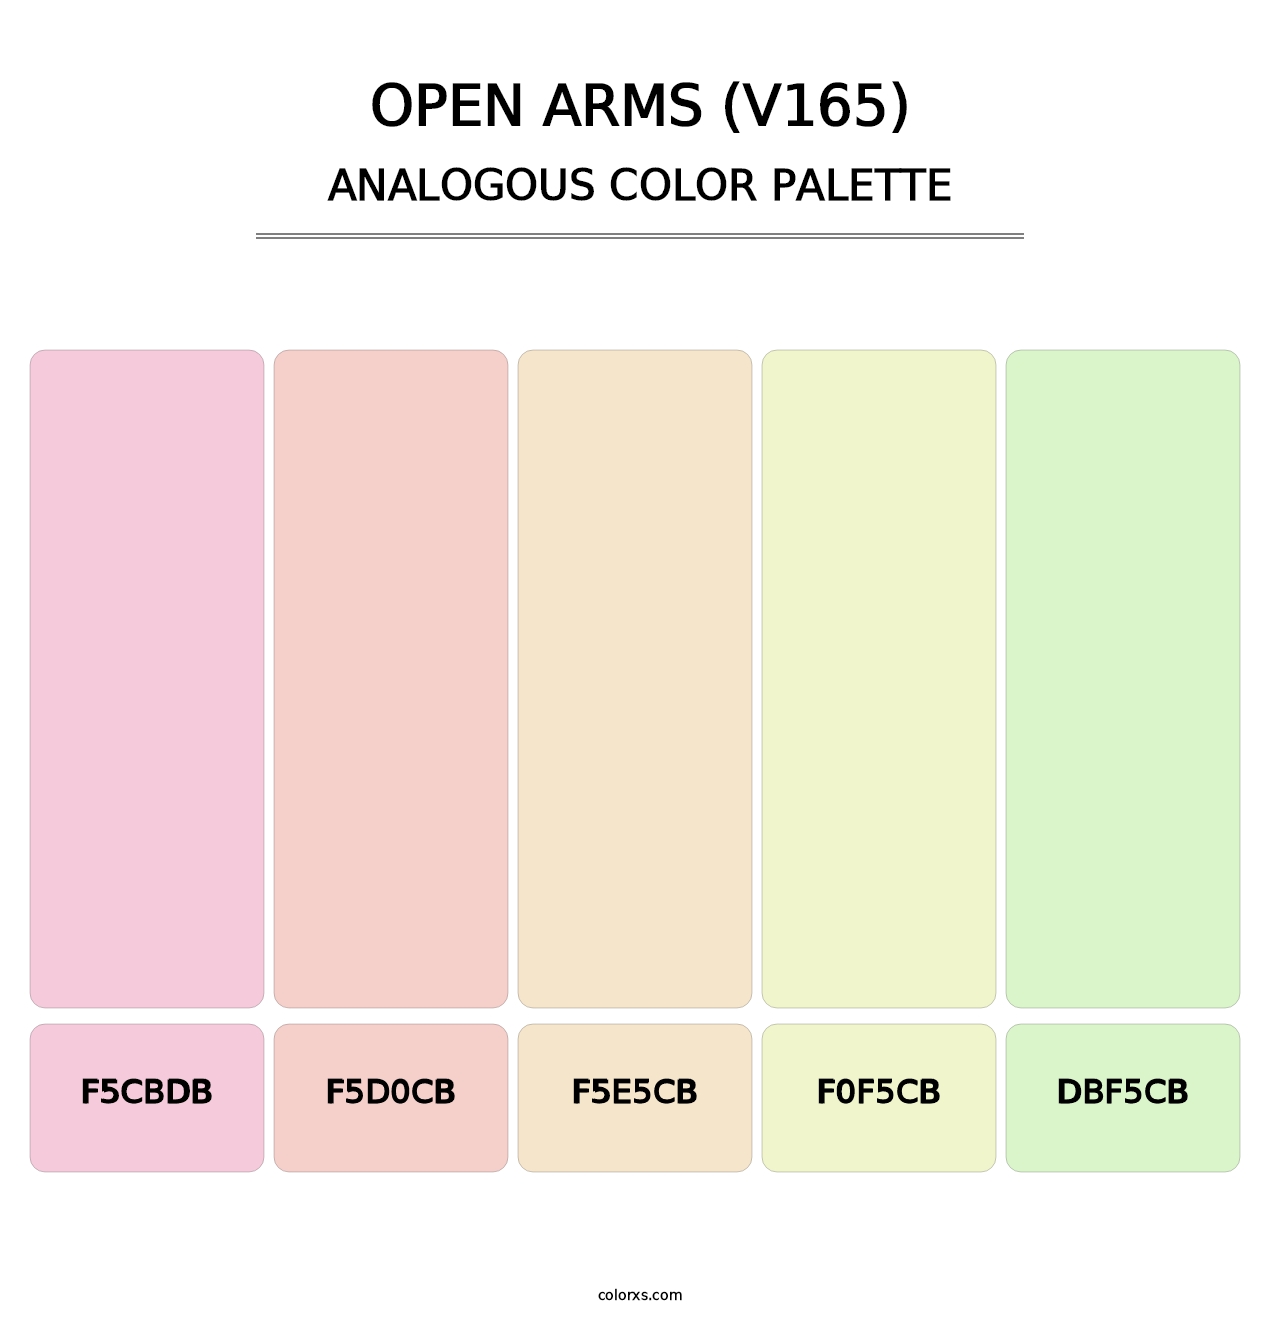 Open Arms (V165) - Analogous Color Palette